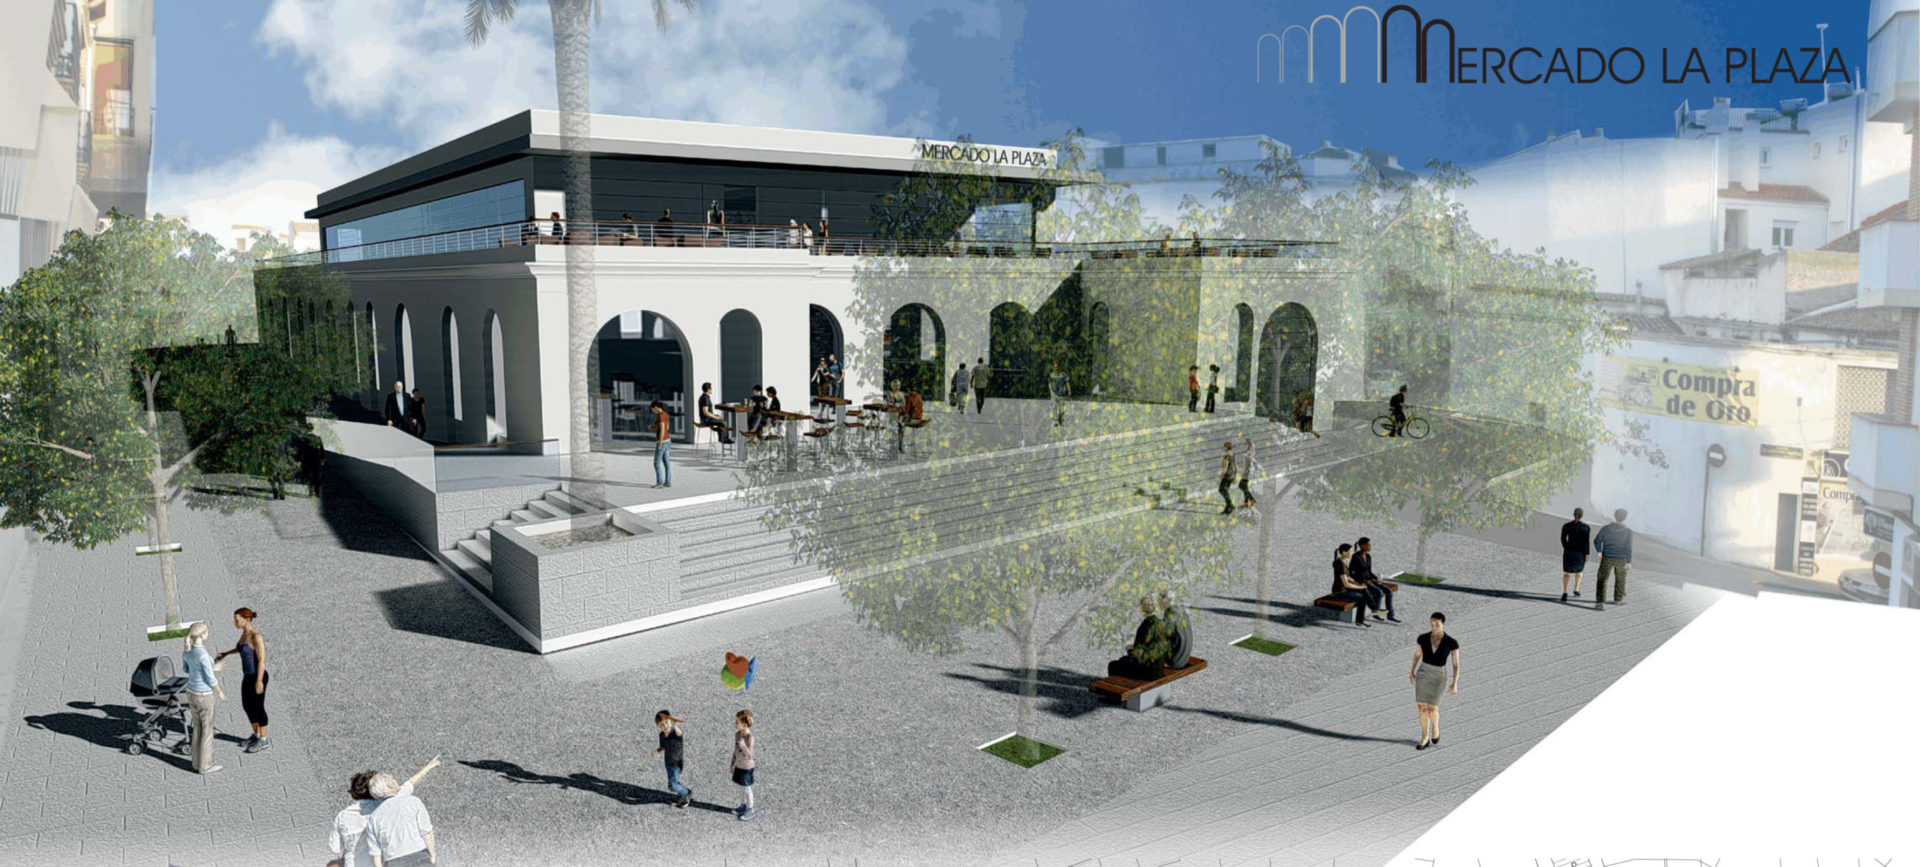 La propuesta del equipo de arquitectos Muñoz, Cabrera y Salamanca gana el concurso de ideas del Mercado de Abastos 1